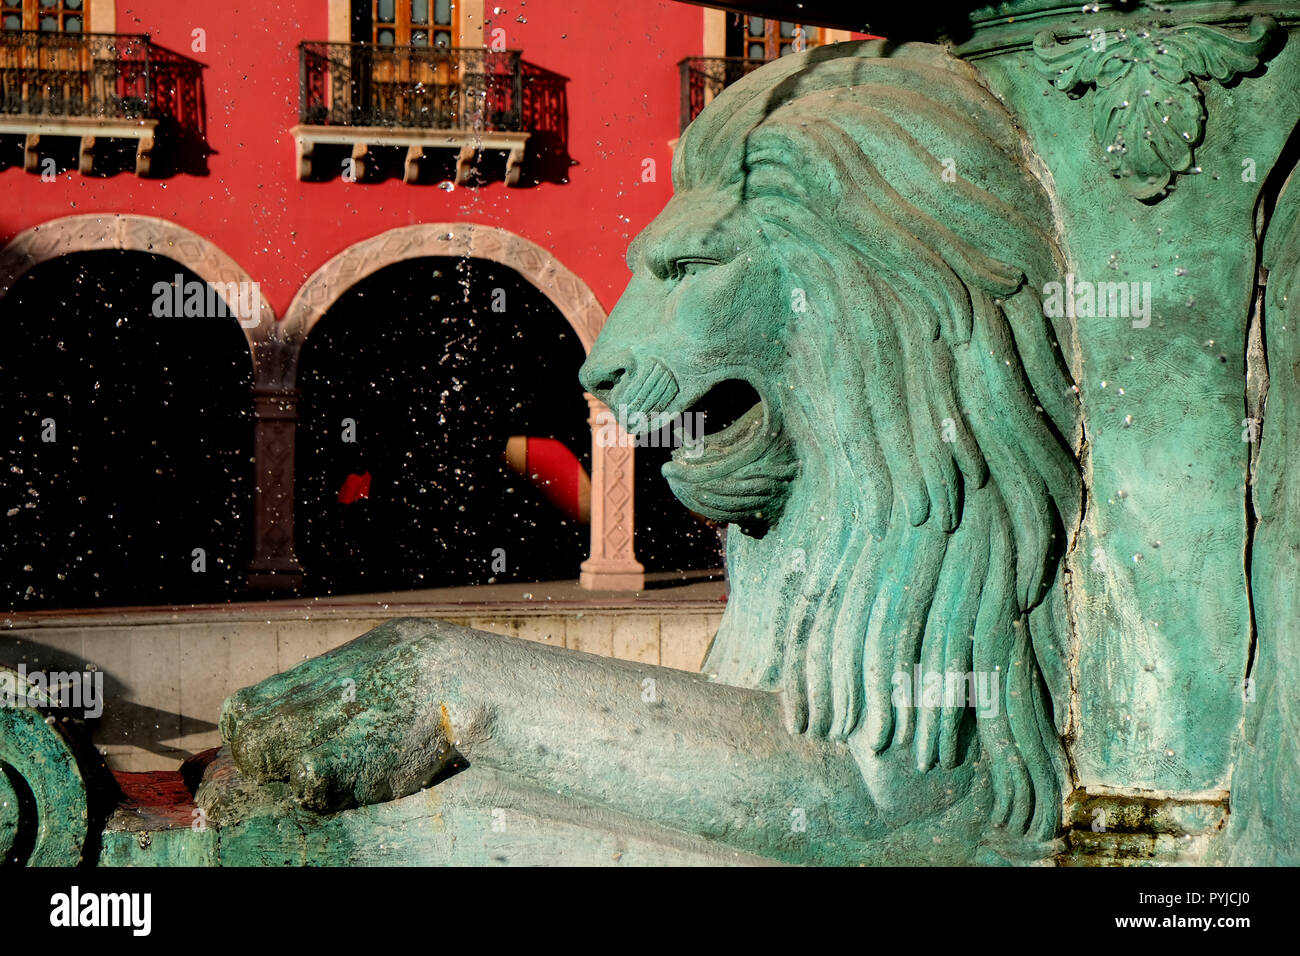 Dettaglio di un leone, parte della Fuente de Los Leones (fontana dei leoni) presso il Plaza Fundadores nel centro di León, Guanajuato, Messico. Foto Stock